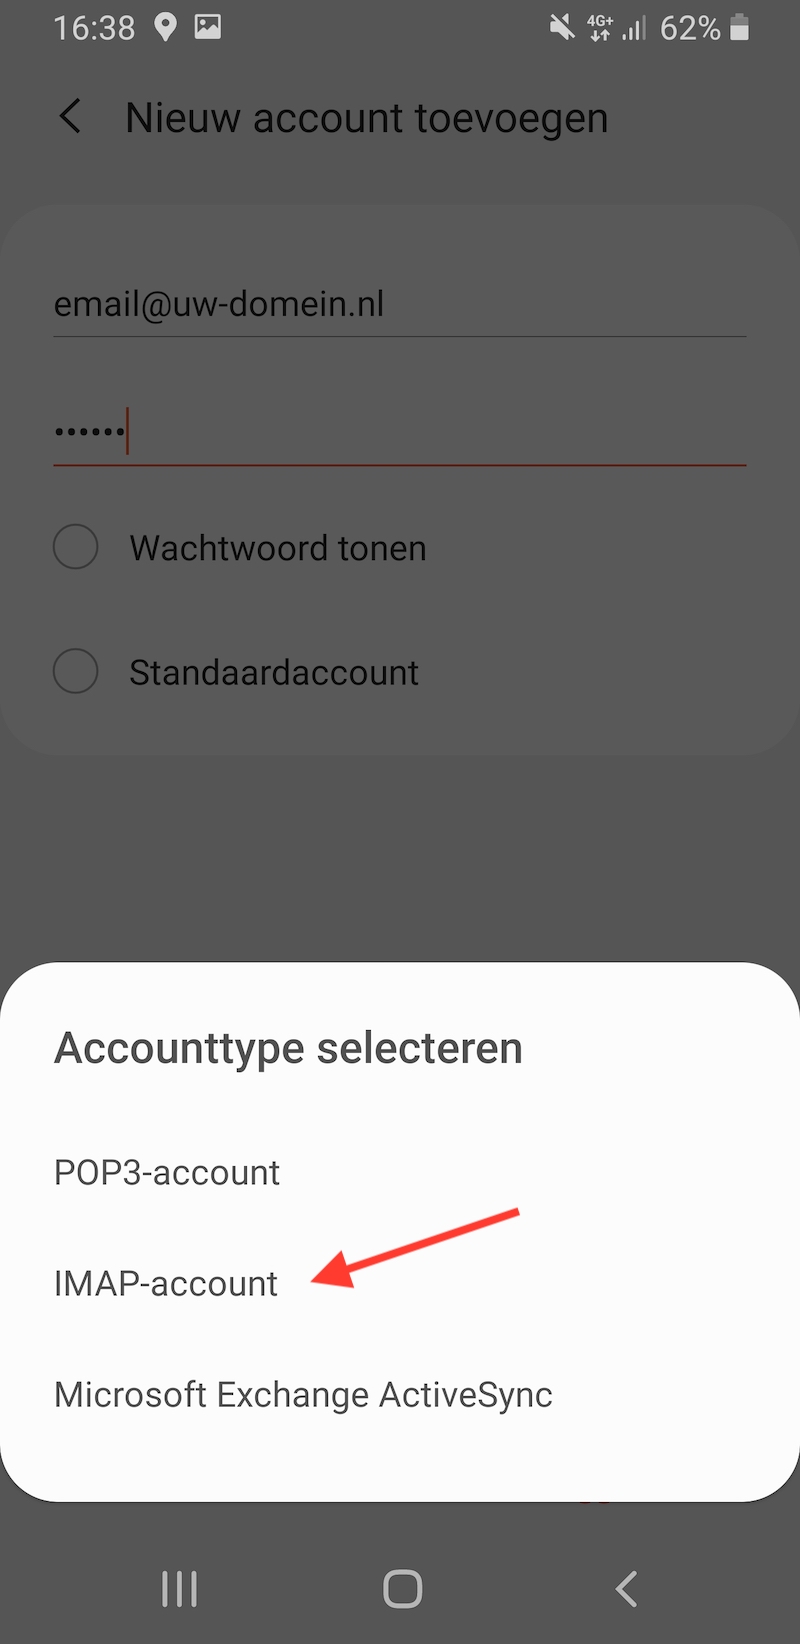 Kies voor IMAP-account bij accounttype